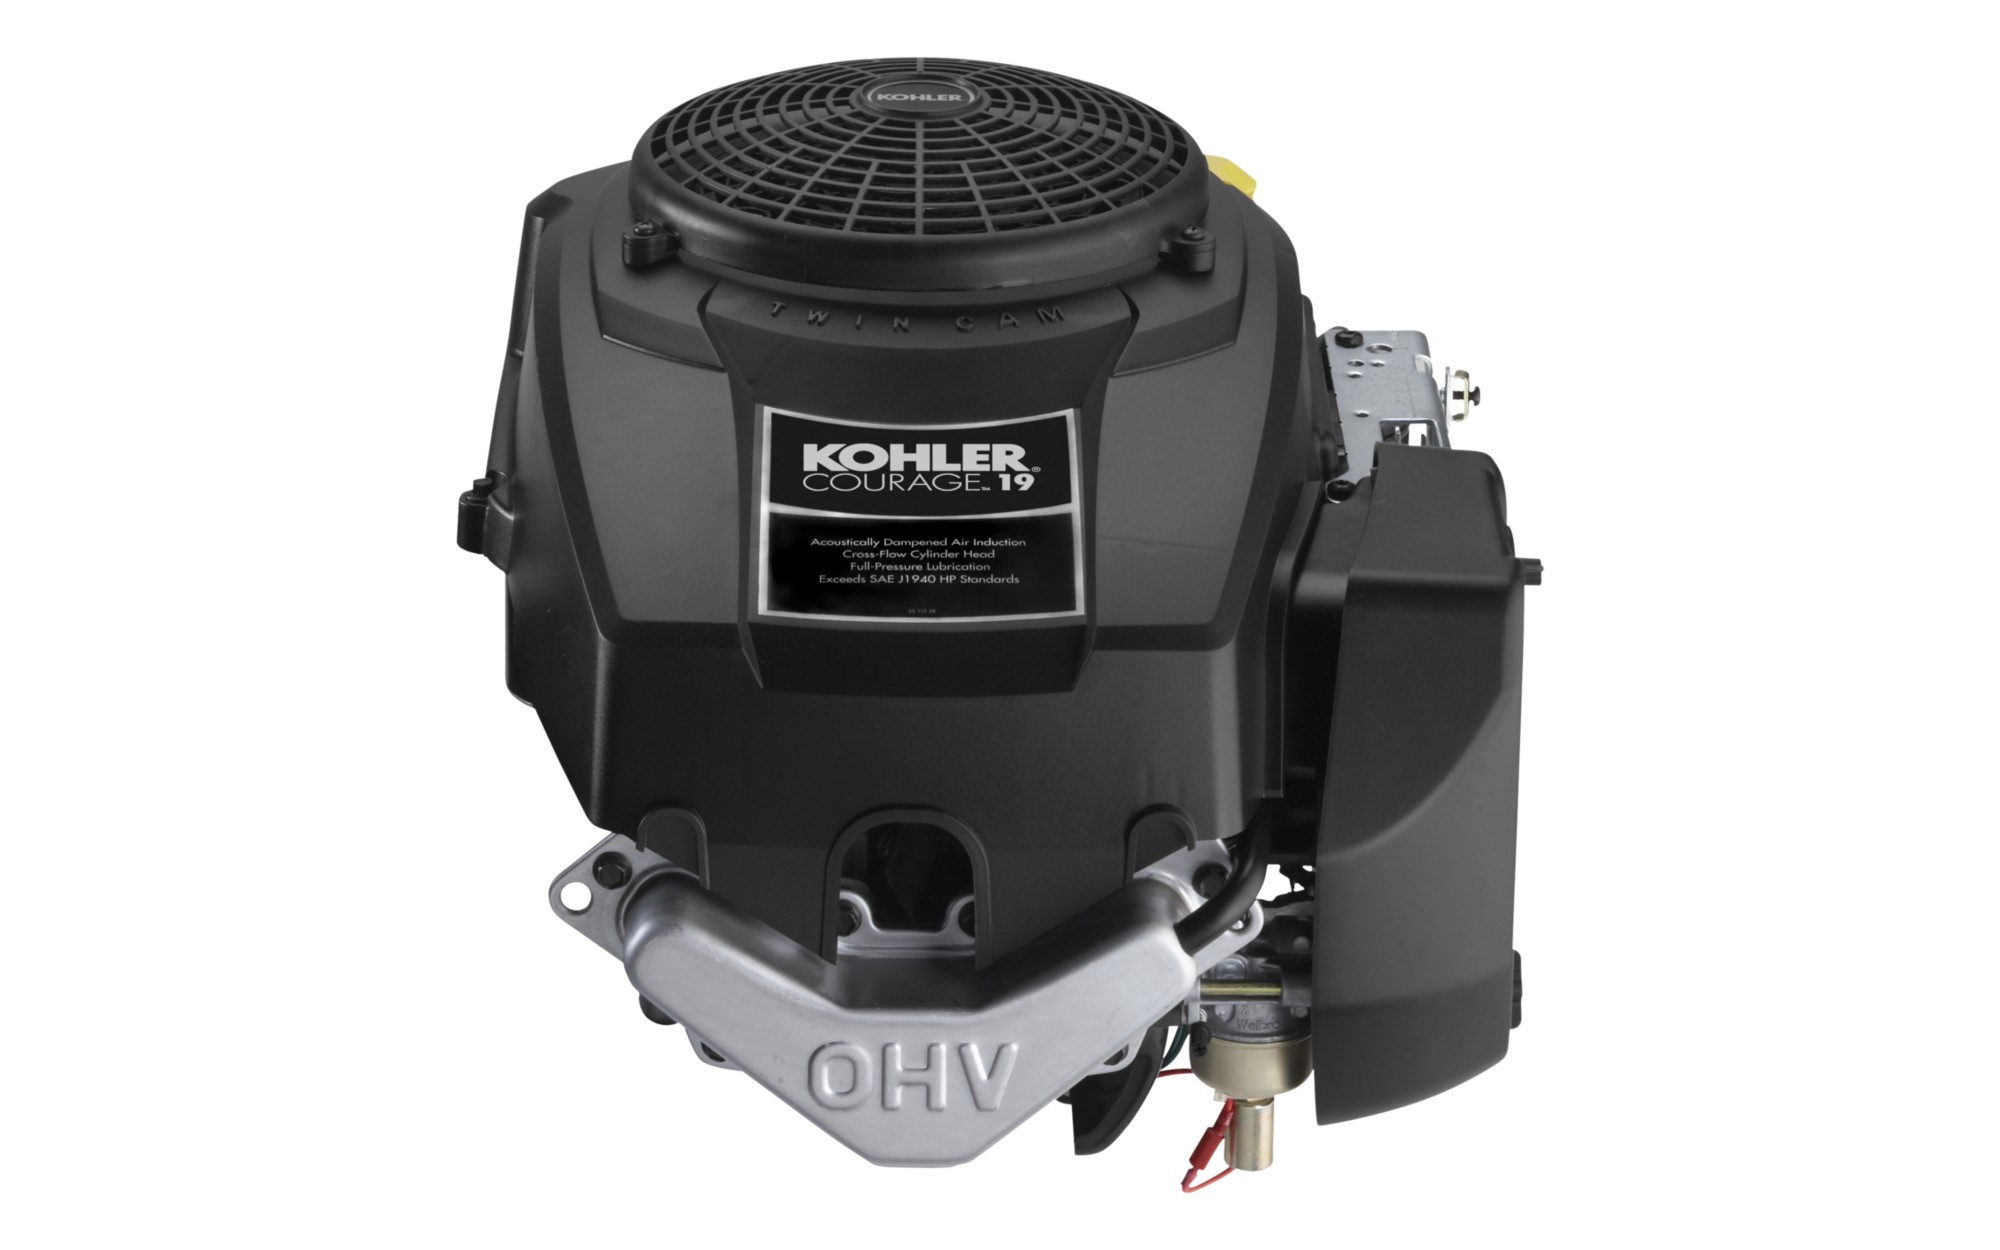 Kohler 19 Hp Courage Engine Problems - Rona Mantar Are Kohler Courage Engines Any Good